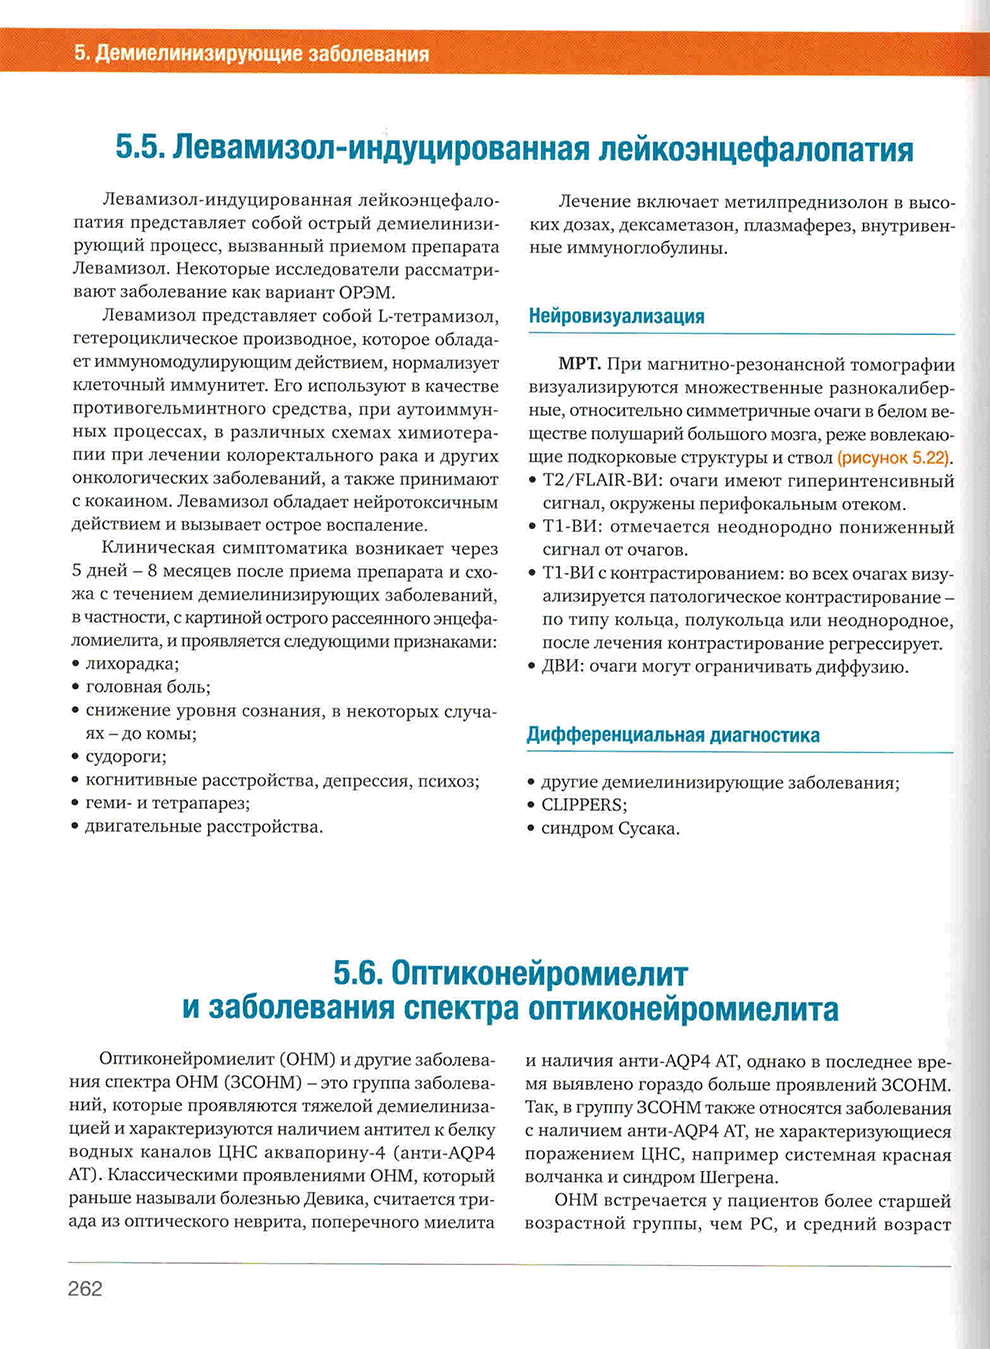 Пример страницы из книги "Нейровизуализация. Головной мозг" - Кротенкова М. В., Сергеева А. Н., Морозова С. Н., Древаль М. В.